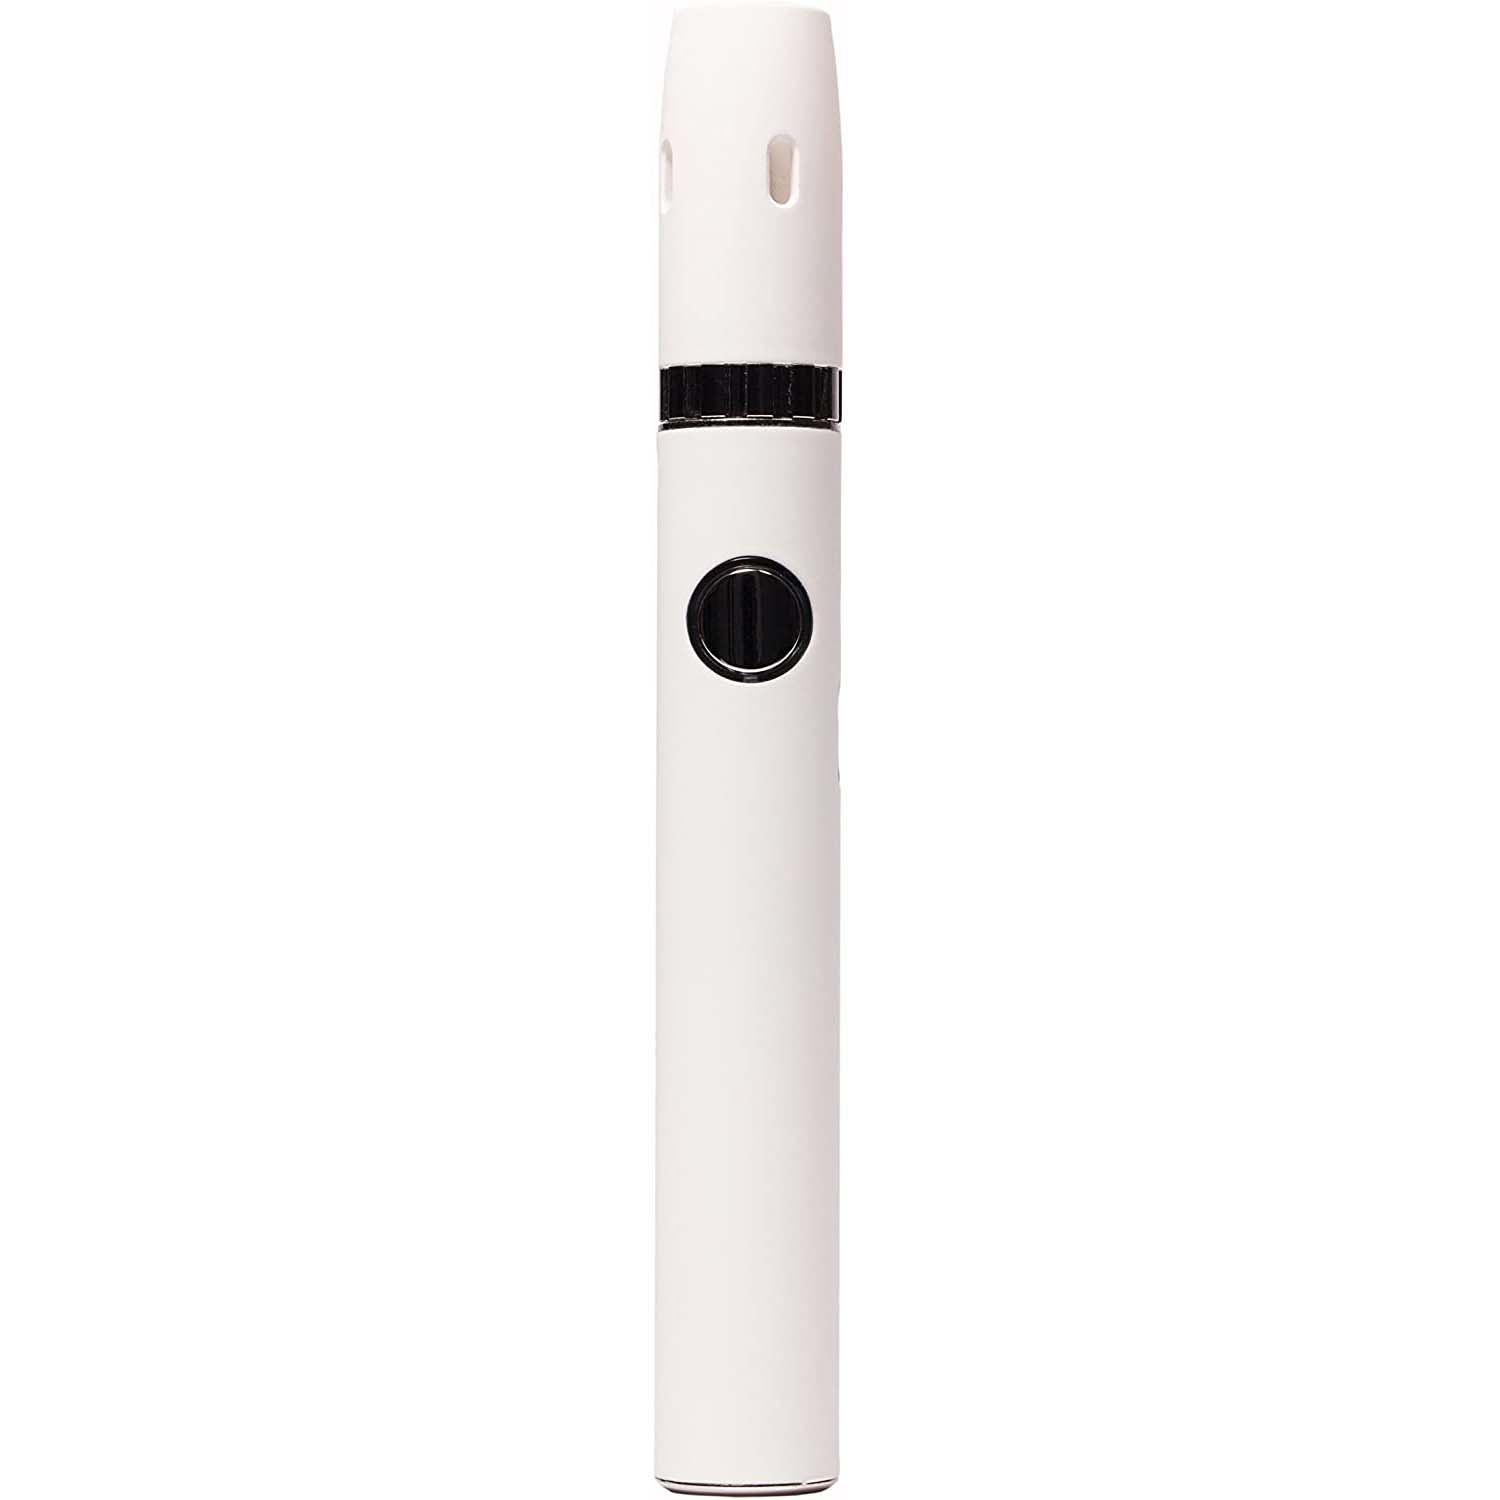 アイコス互換品 Kamry Ecig 2.0 IQOSタバコカートリッジ使用 セラミックヒートシート 加熱式 電子タバコ 650mah バッテリー | ホワイト